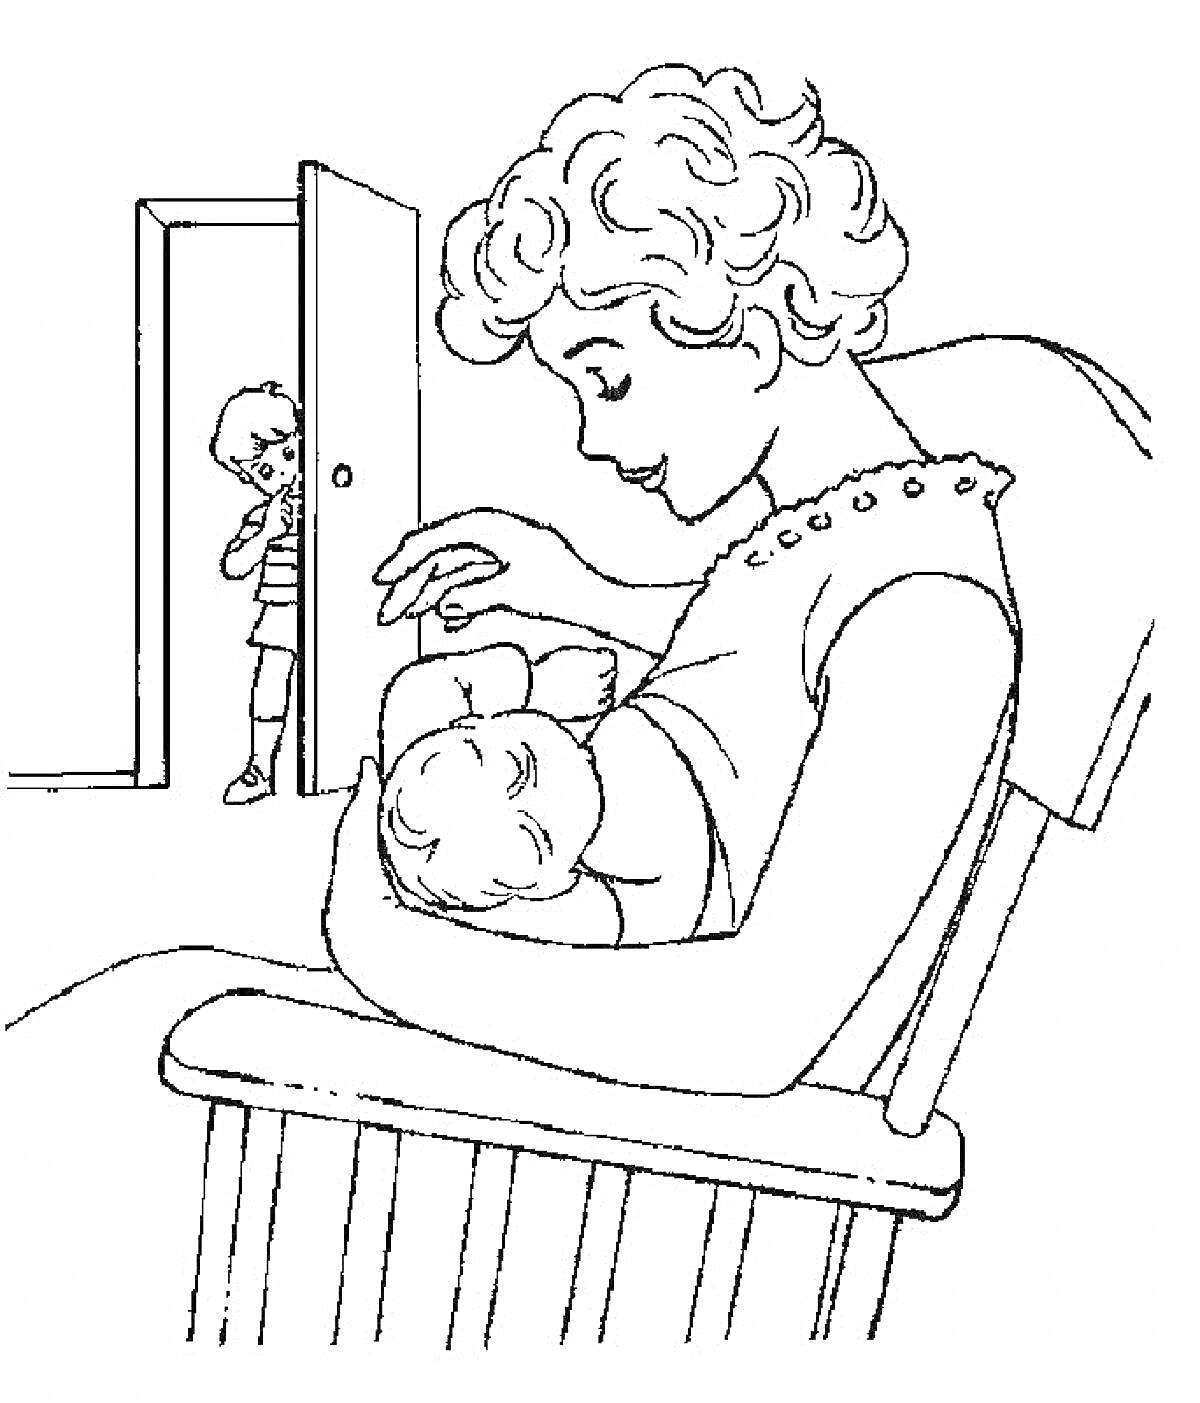 Раскраска Мама кормит младенца на кресле-качалке, мальчик выглядывает из-за двери